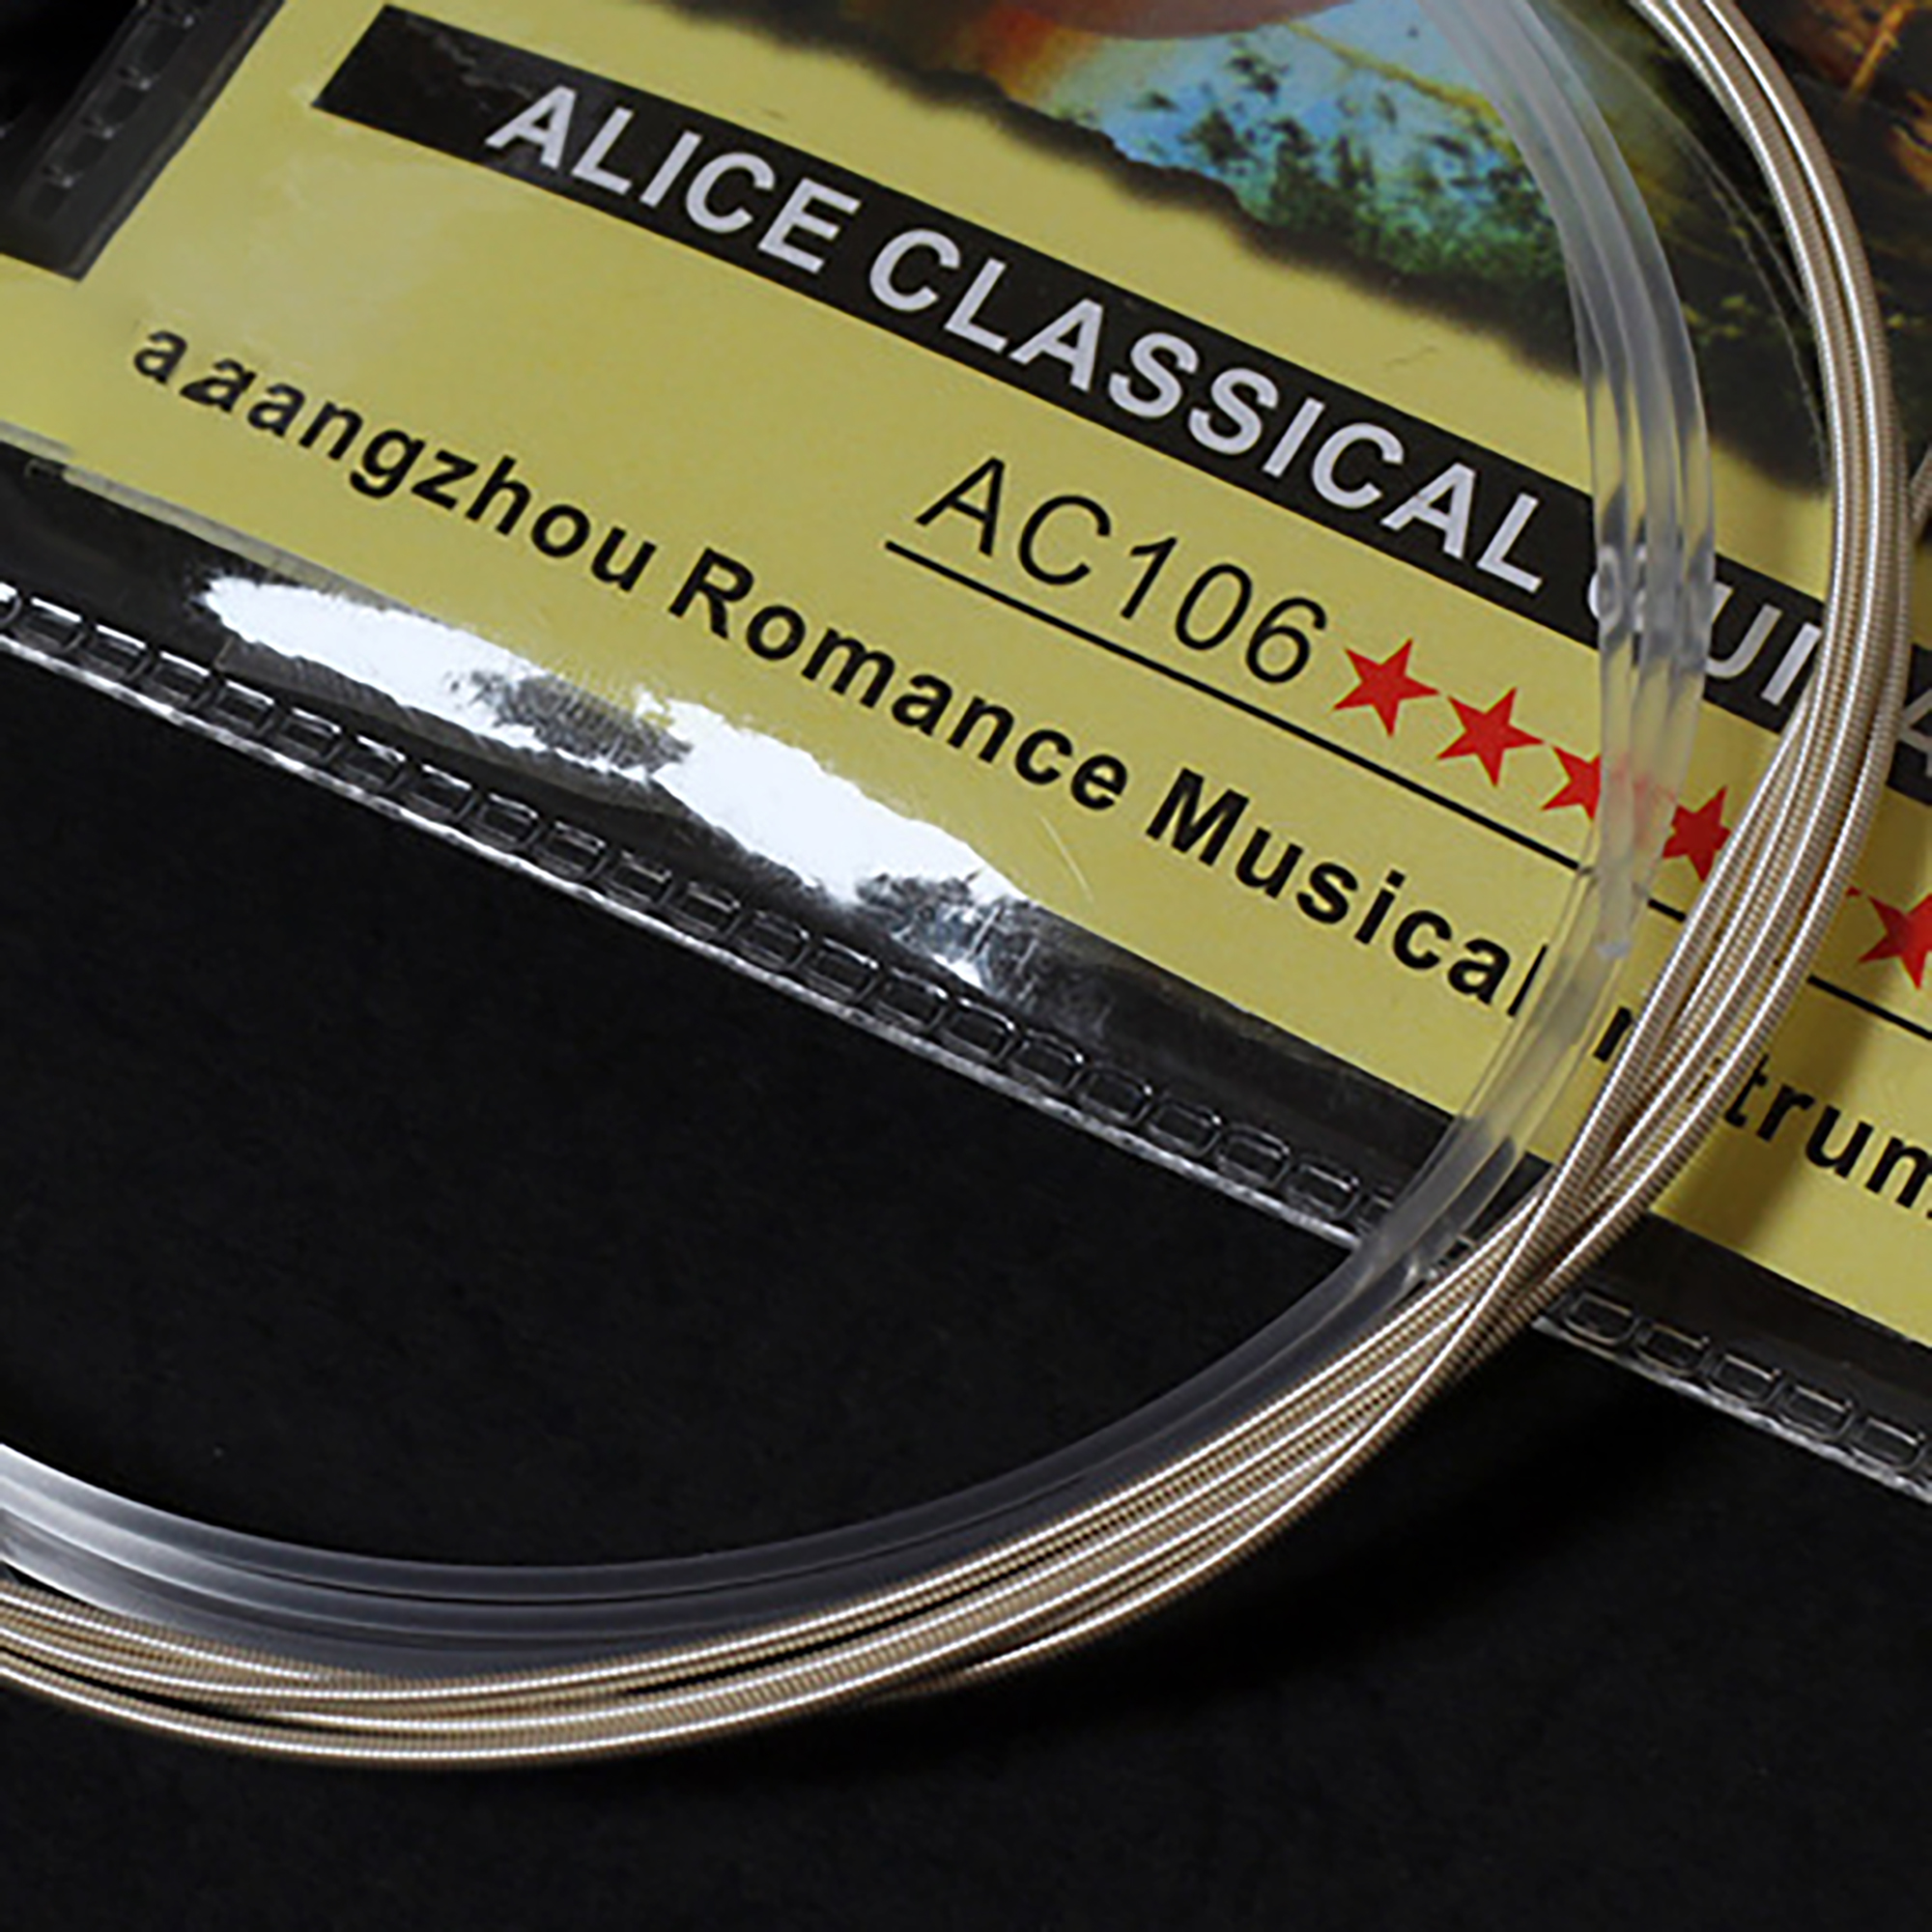 Loại tốt - Alice A106 - Dây lẻ đàn Guitar Classic số 1 - 2 - 3 - 4 - 5 - 6